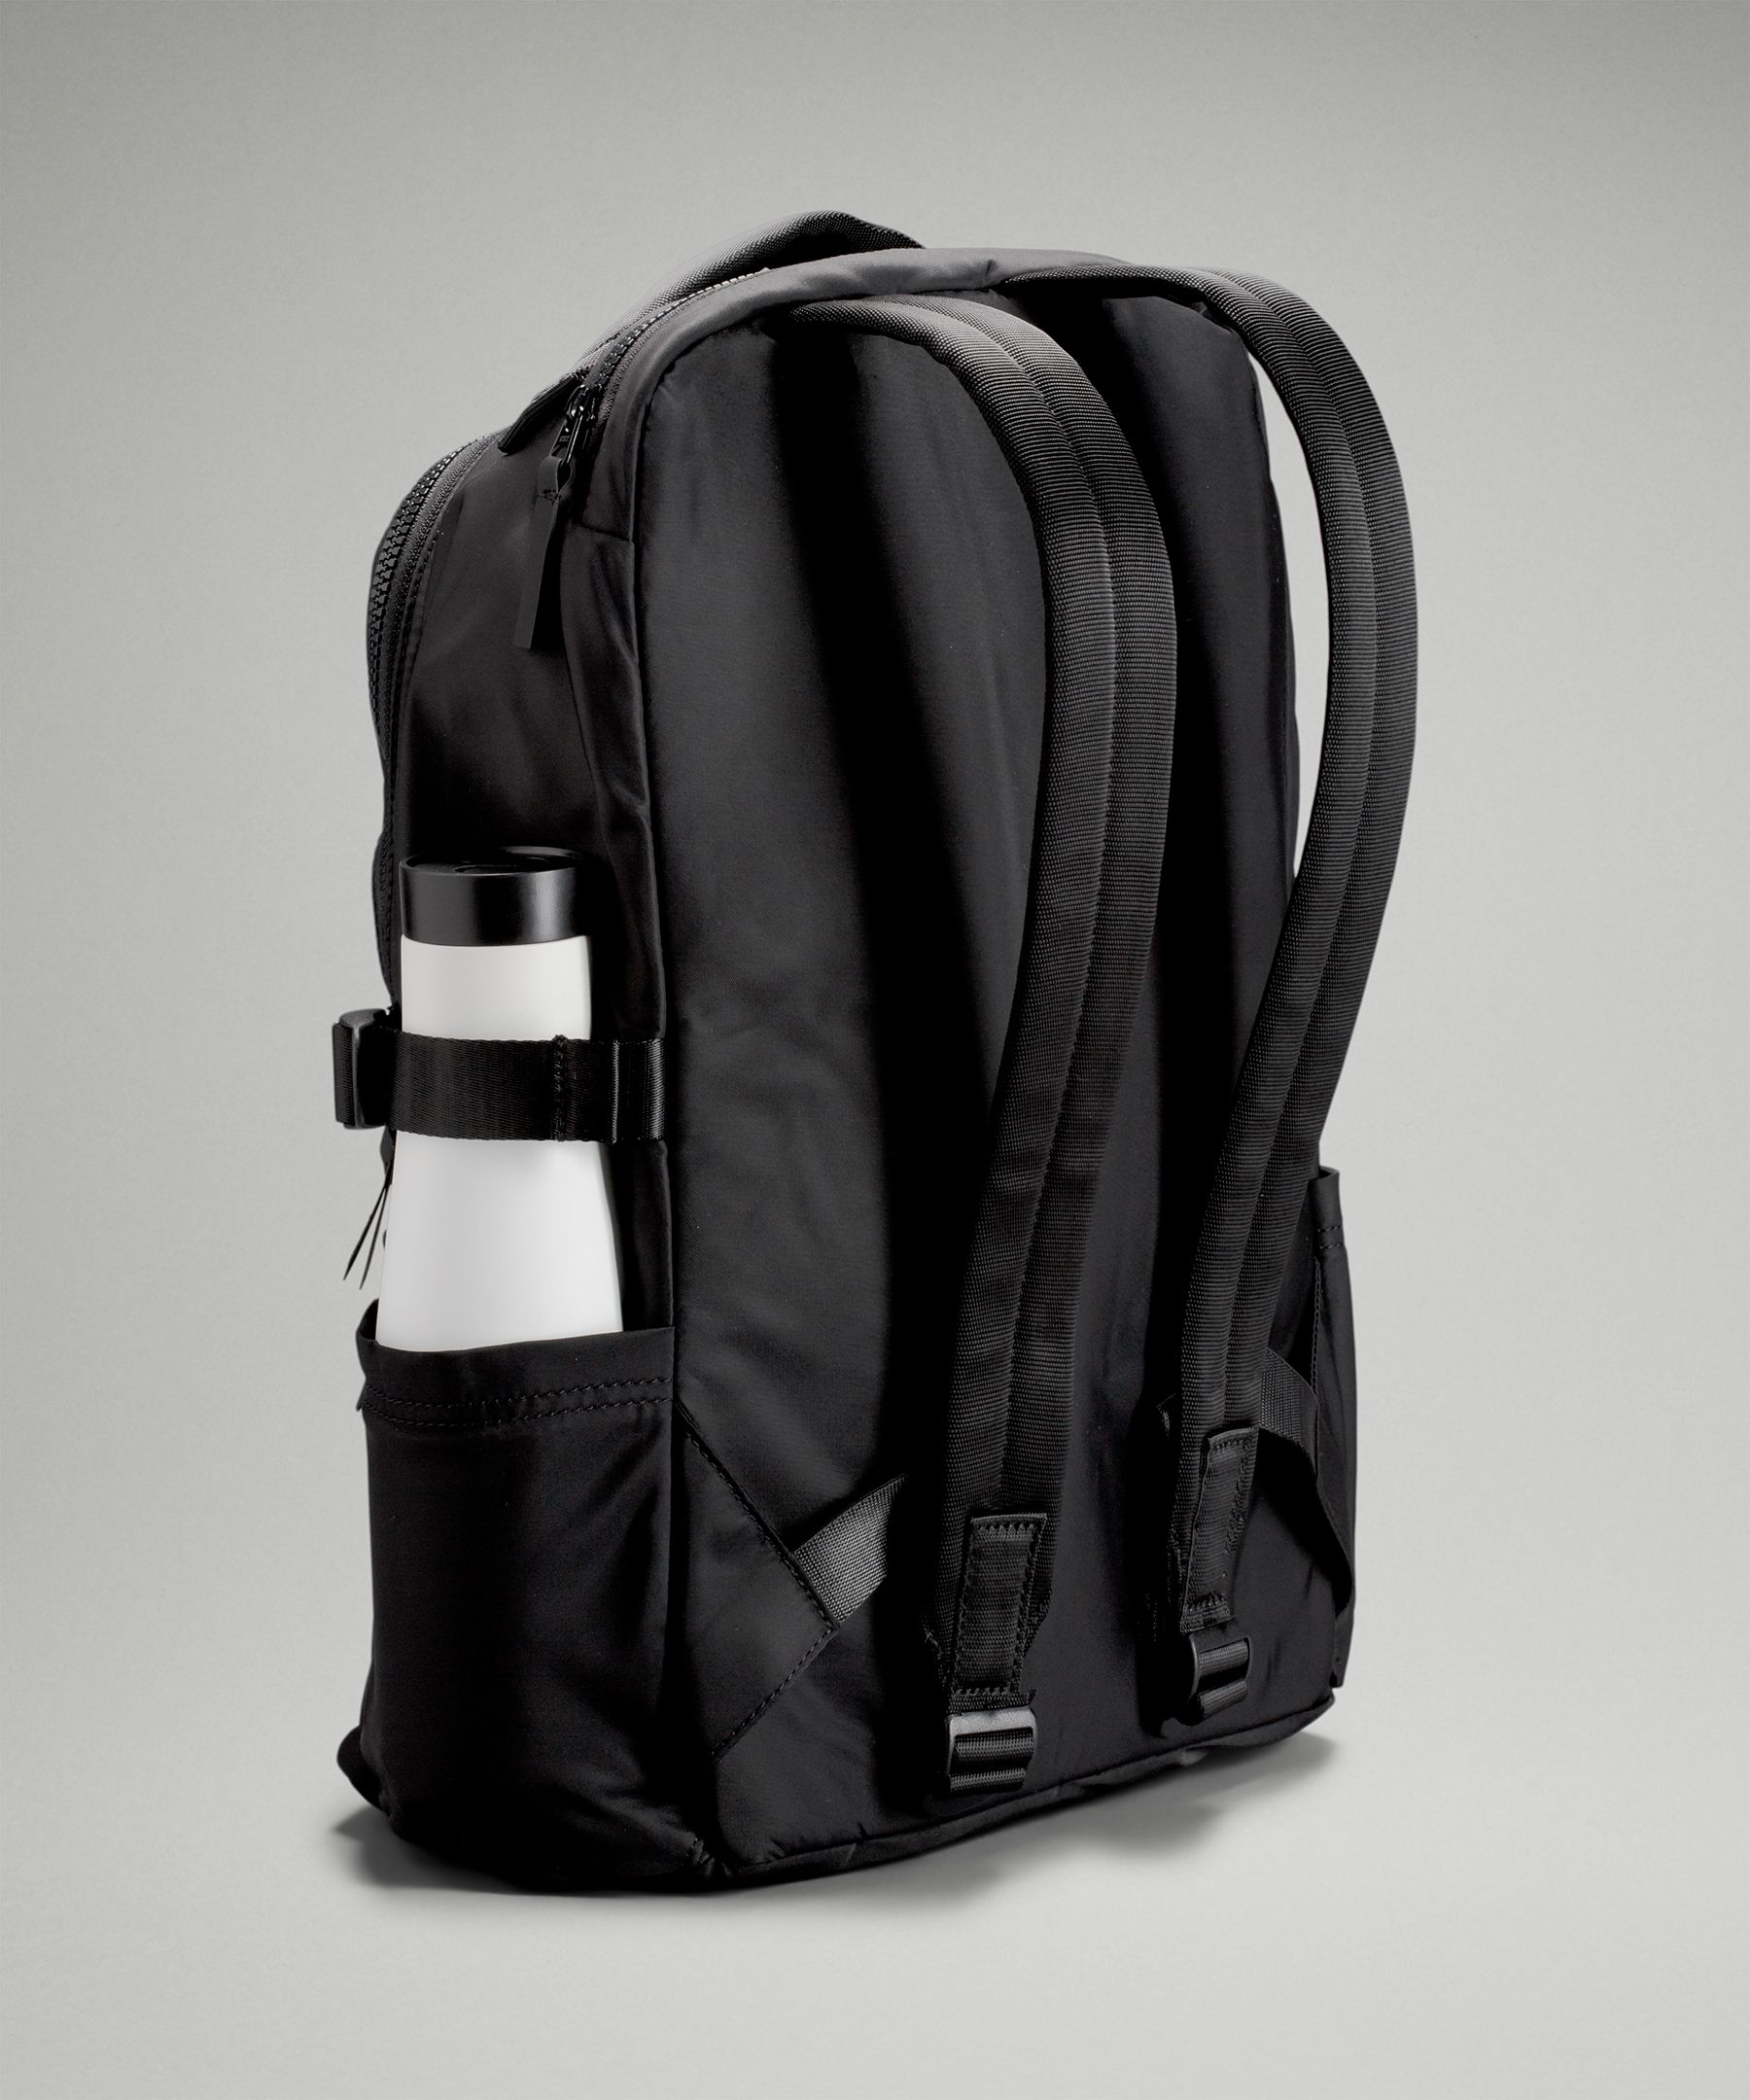 lululemon new crew backpack black